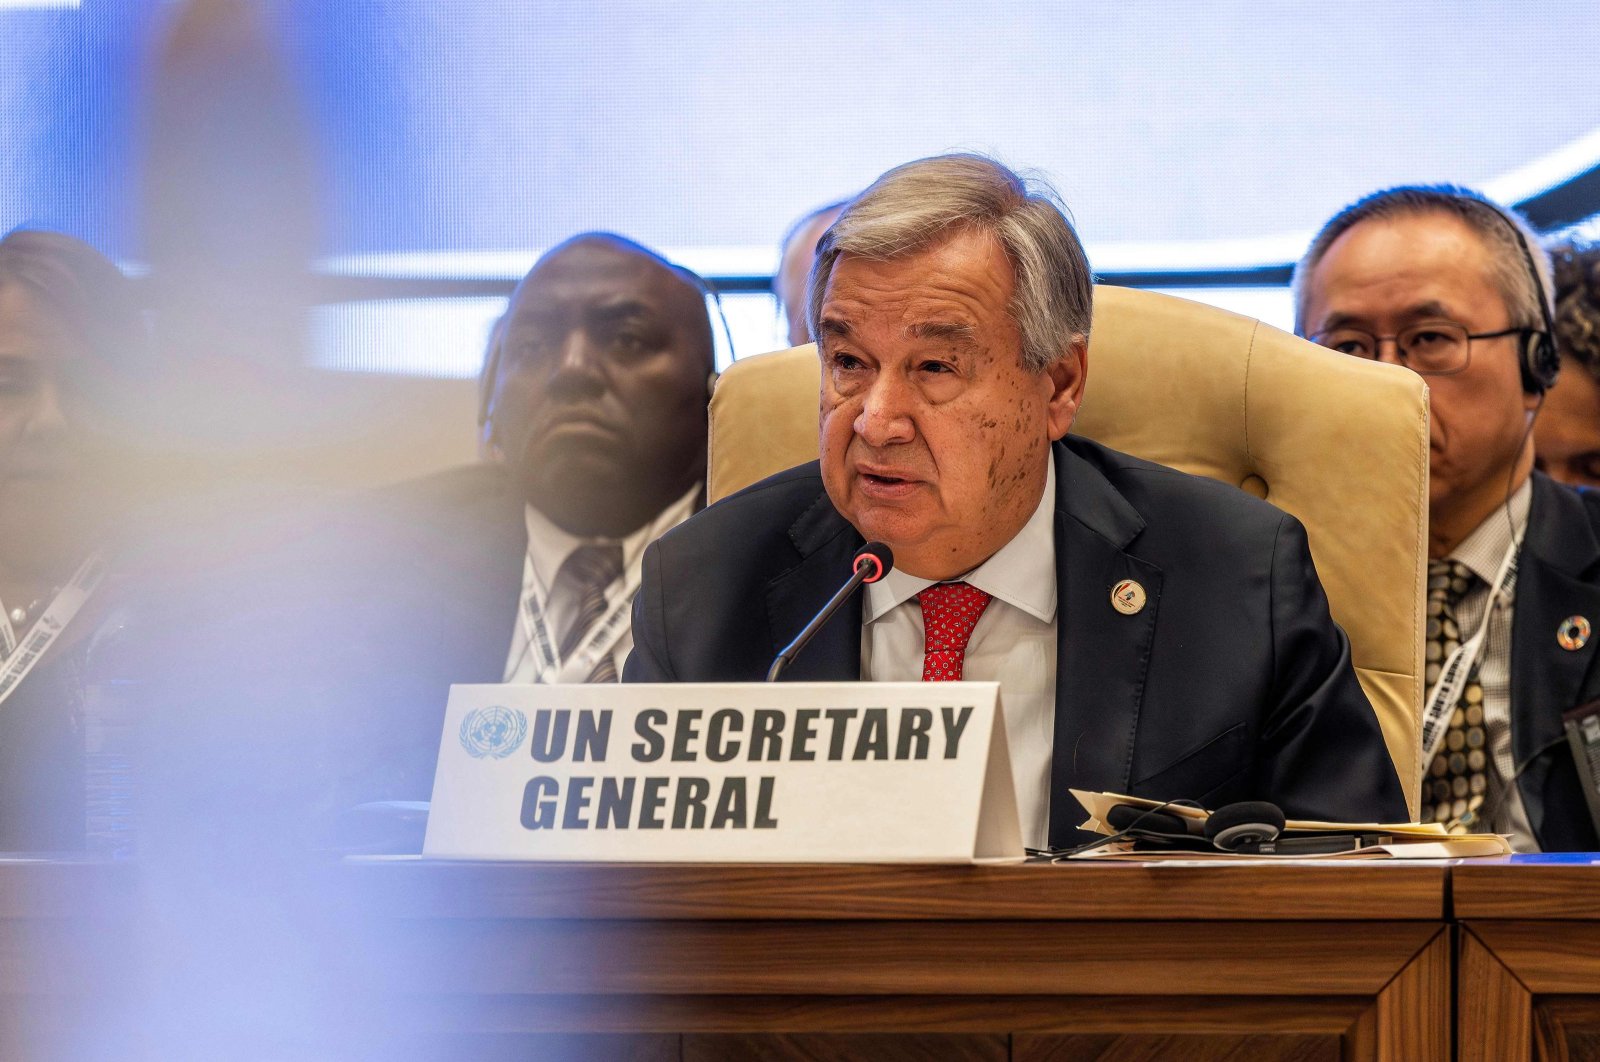 ‘Heartbreaking’: UN chief Guterres slams Israel for Gaza killings